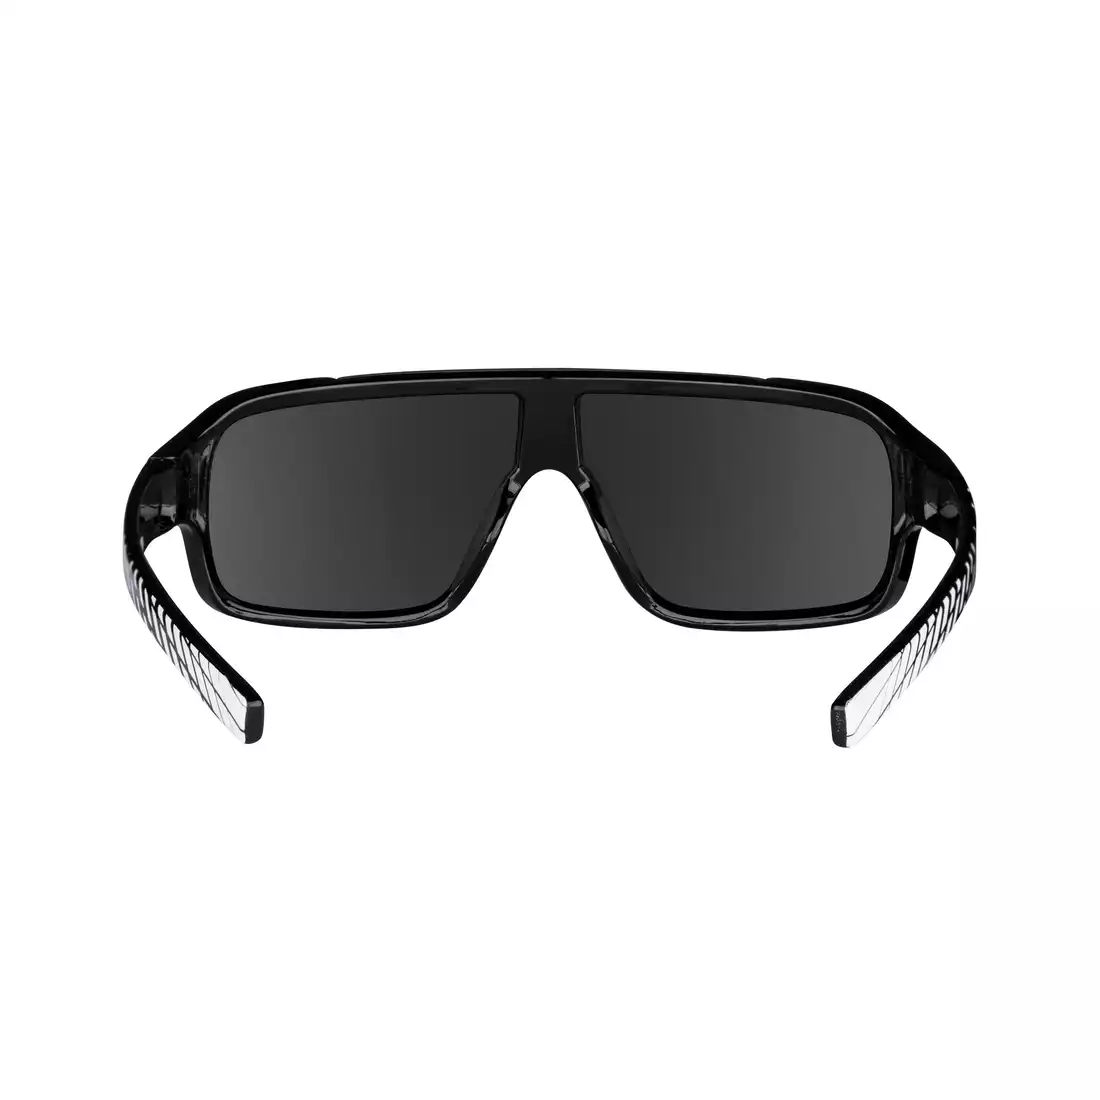 FORCE okulary damskie/młodzieżowe przeciwsłoneczne CHIC, biało-czarne, czarne szkła 90961